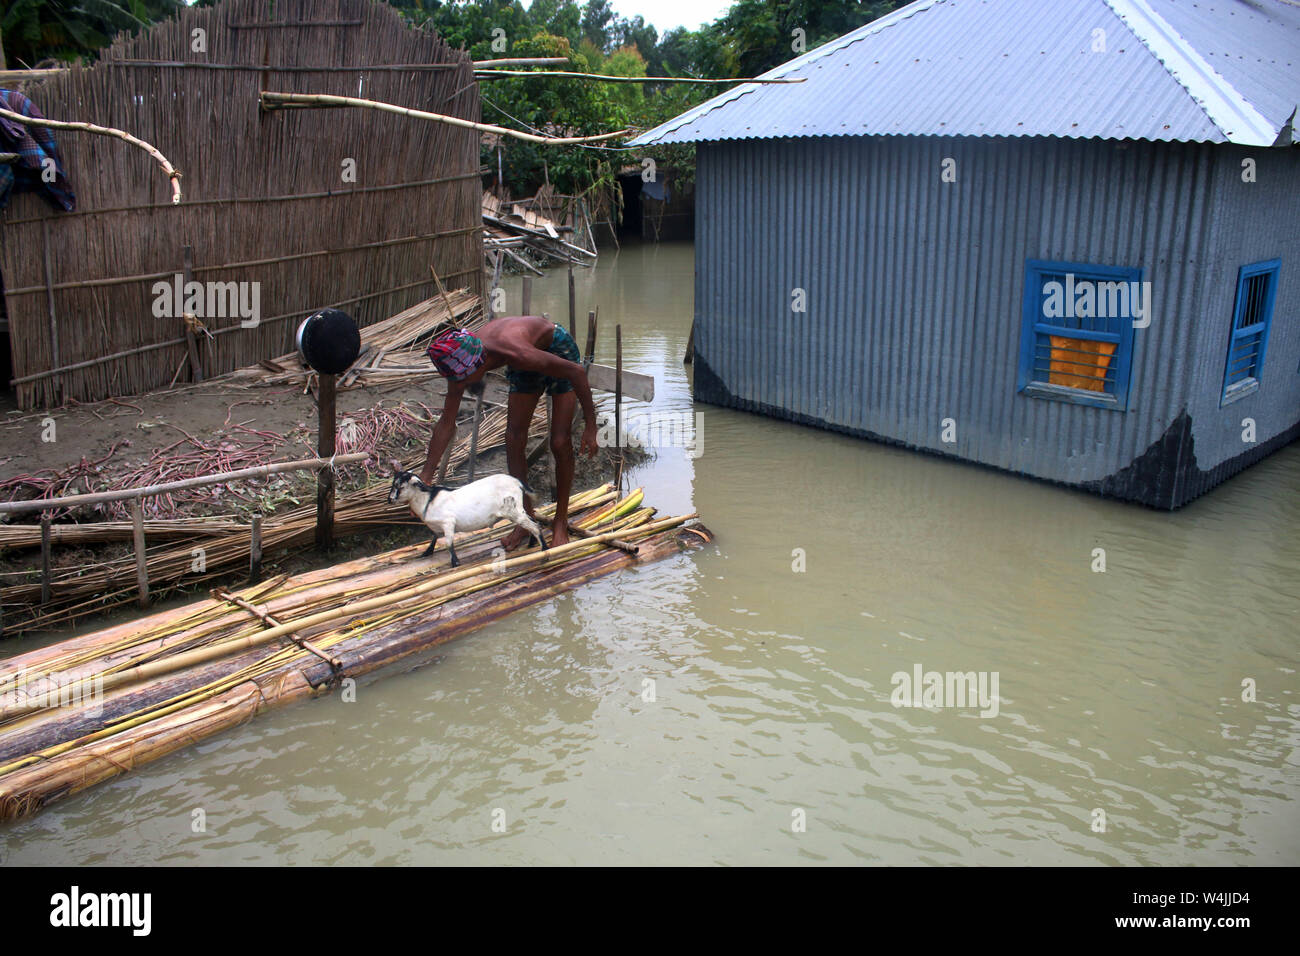 Tangail, Bangladesch. 22. Juli, 2019. Ein Mann nimmt seine Ziege zu schützen, nachdem sein Haus von Überschwemmungen in Tangail betroffen. Über millionen Menschen durch Überschwemmungen durch den Monsun Regen und ausufernden Fluss im Norden, Nordosten und hügeligen Regionen in Bangladesch ausgelöst betroffen. Bild: Sultan Mahmud Mukut/SOPA Images/ZUMA Draht/Alamy leben Nachrichten Stockfoto